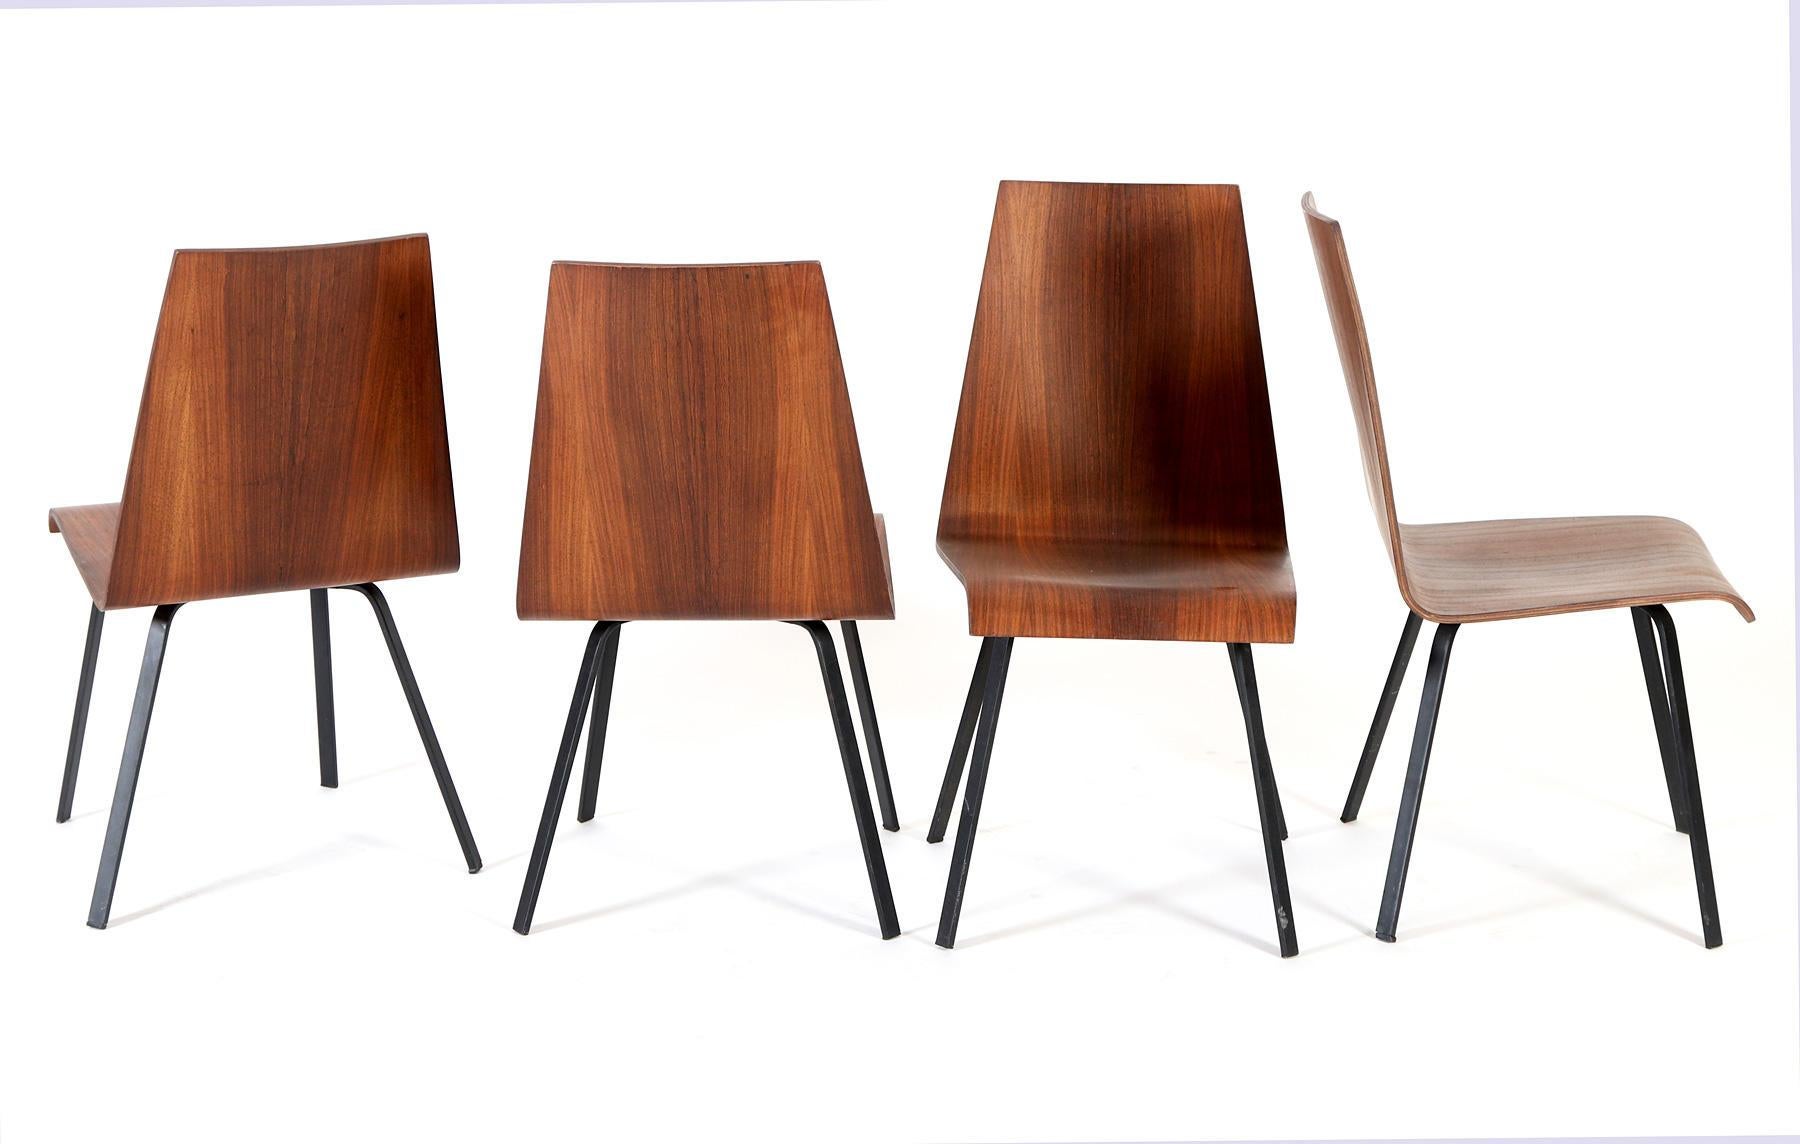 Schwarz lackierter Stahlrahmen mit Sitz und Rückenlehne aus Hartholzsperrholz, hergestellt in Schweden in den späten 1960er Jahren.
Satz von vier, einer mit kleinen Schäden an der Ecke (siehe Bild).